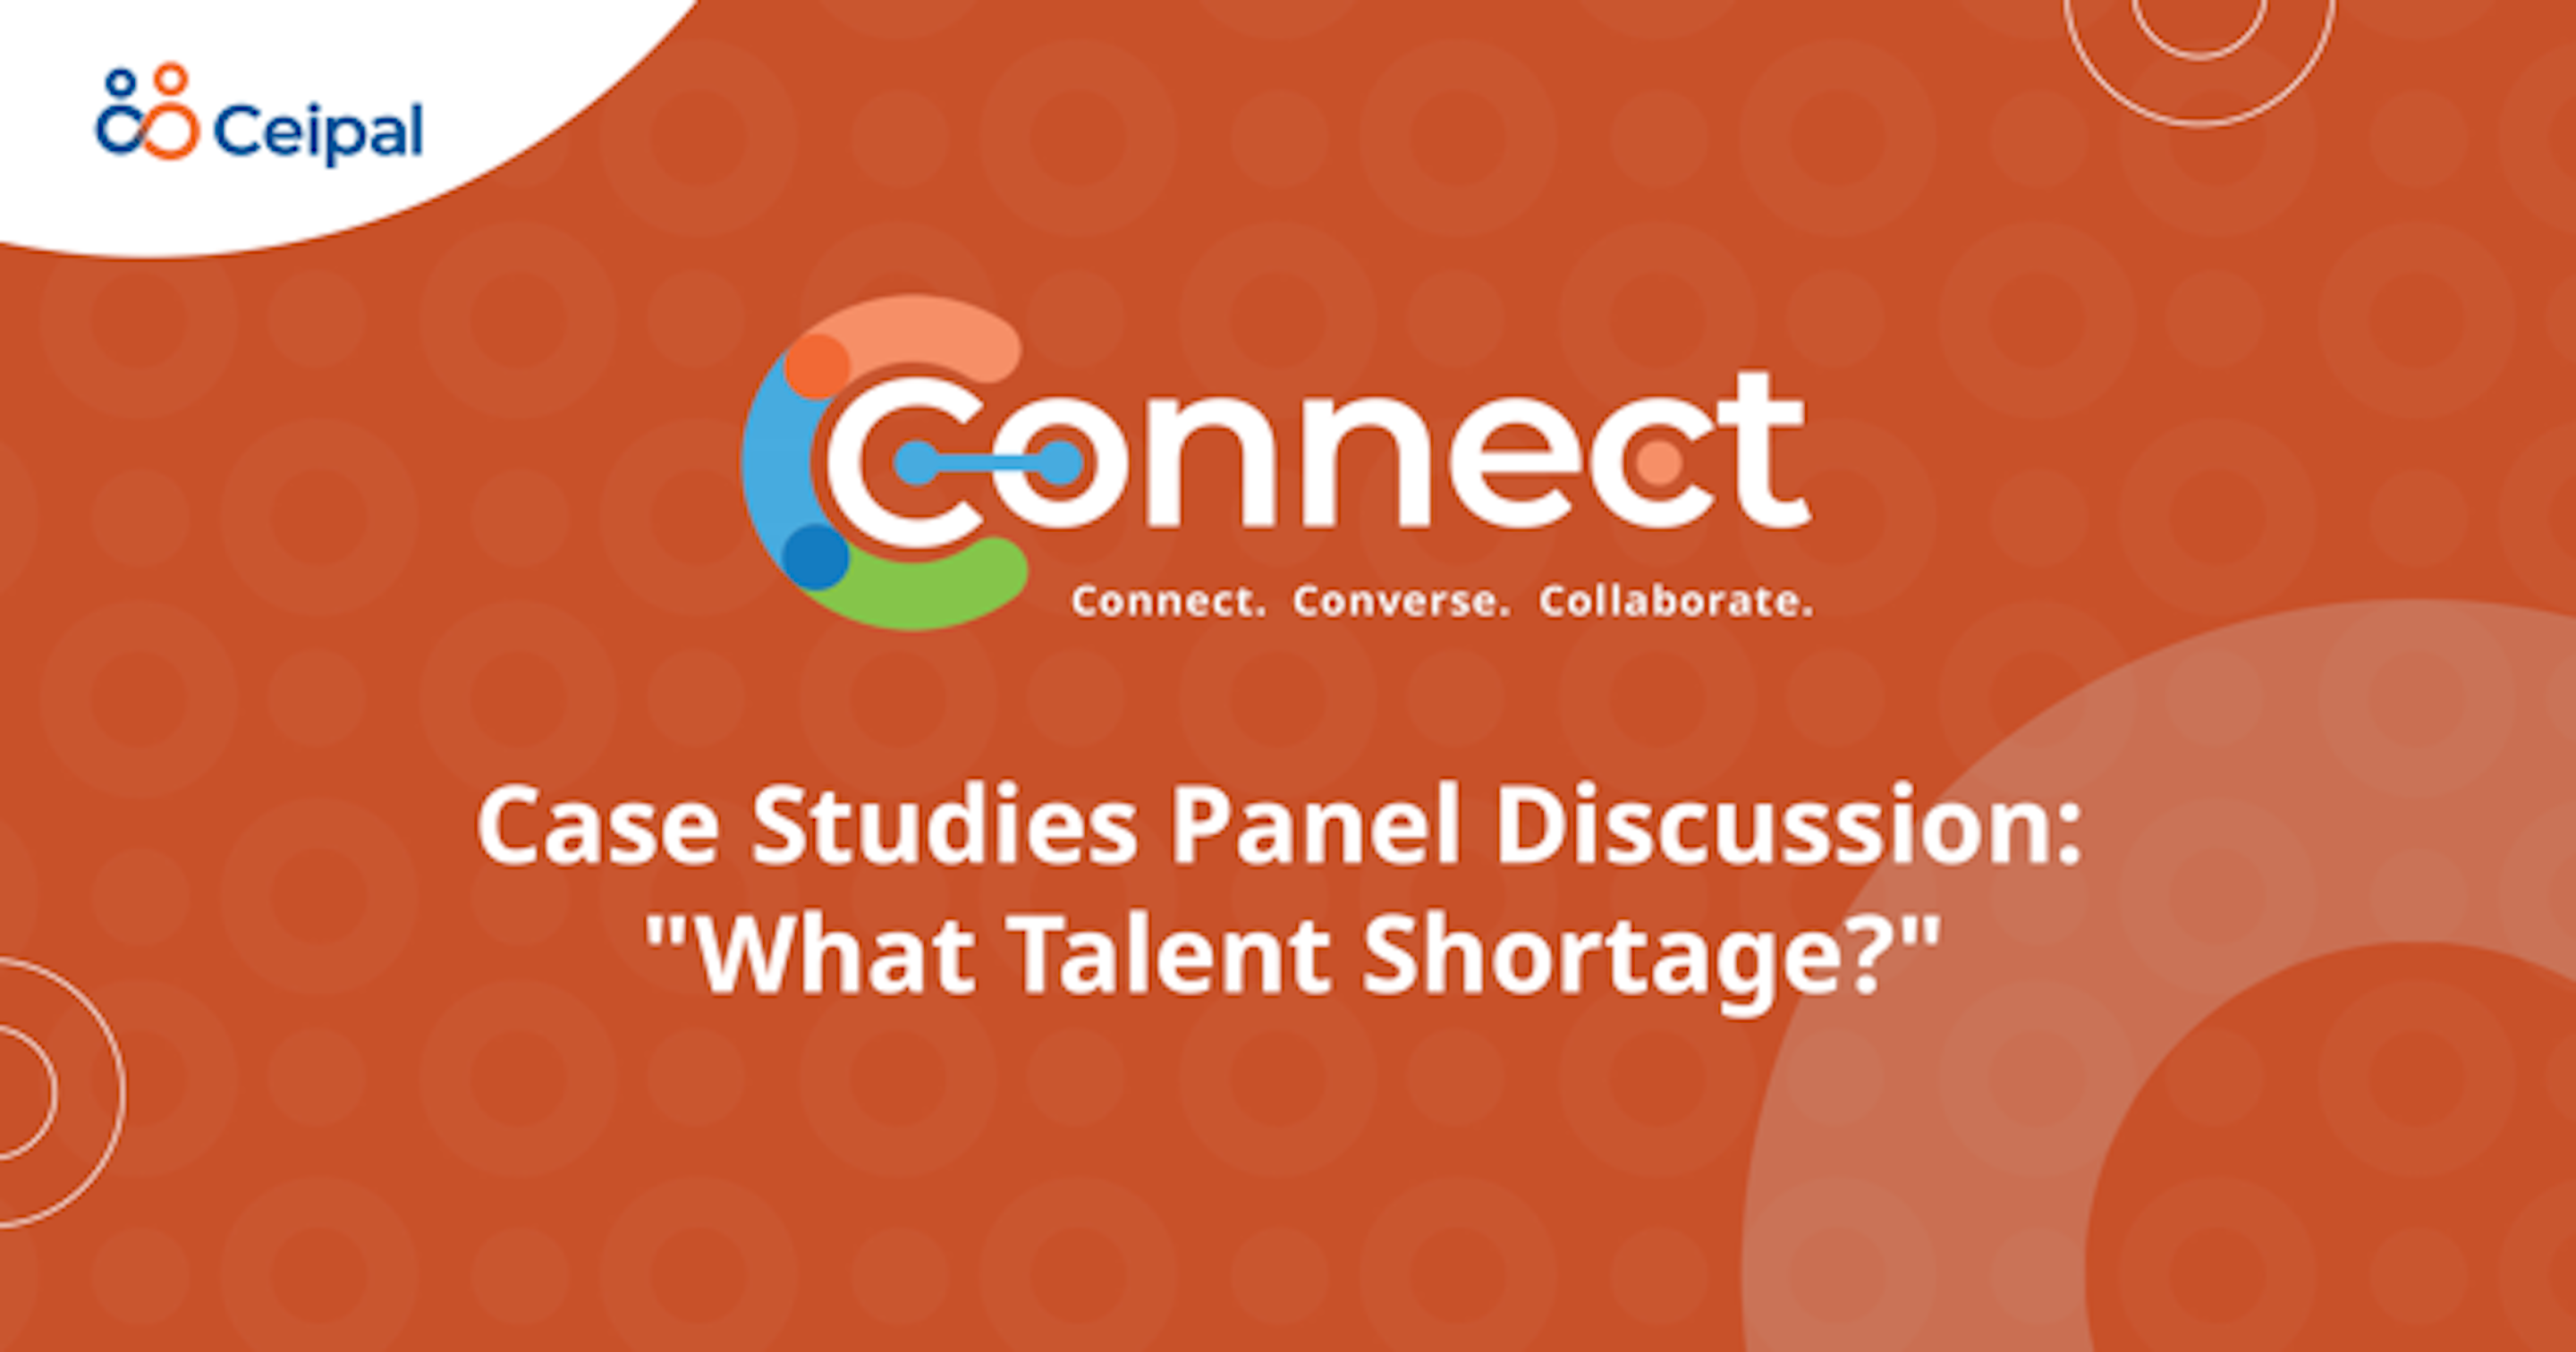 Case Studies Panel Discussion: “What Talent Shortage?”